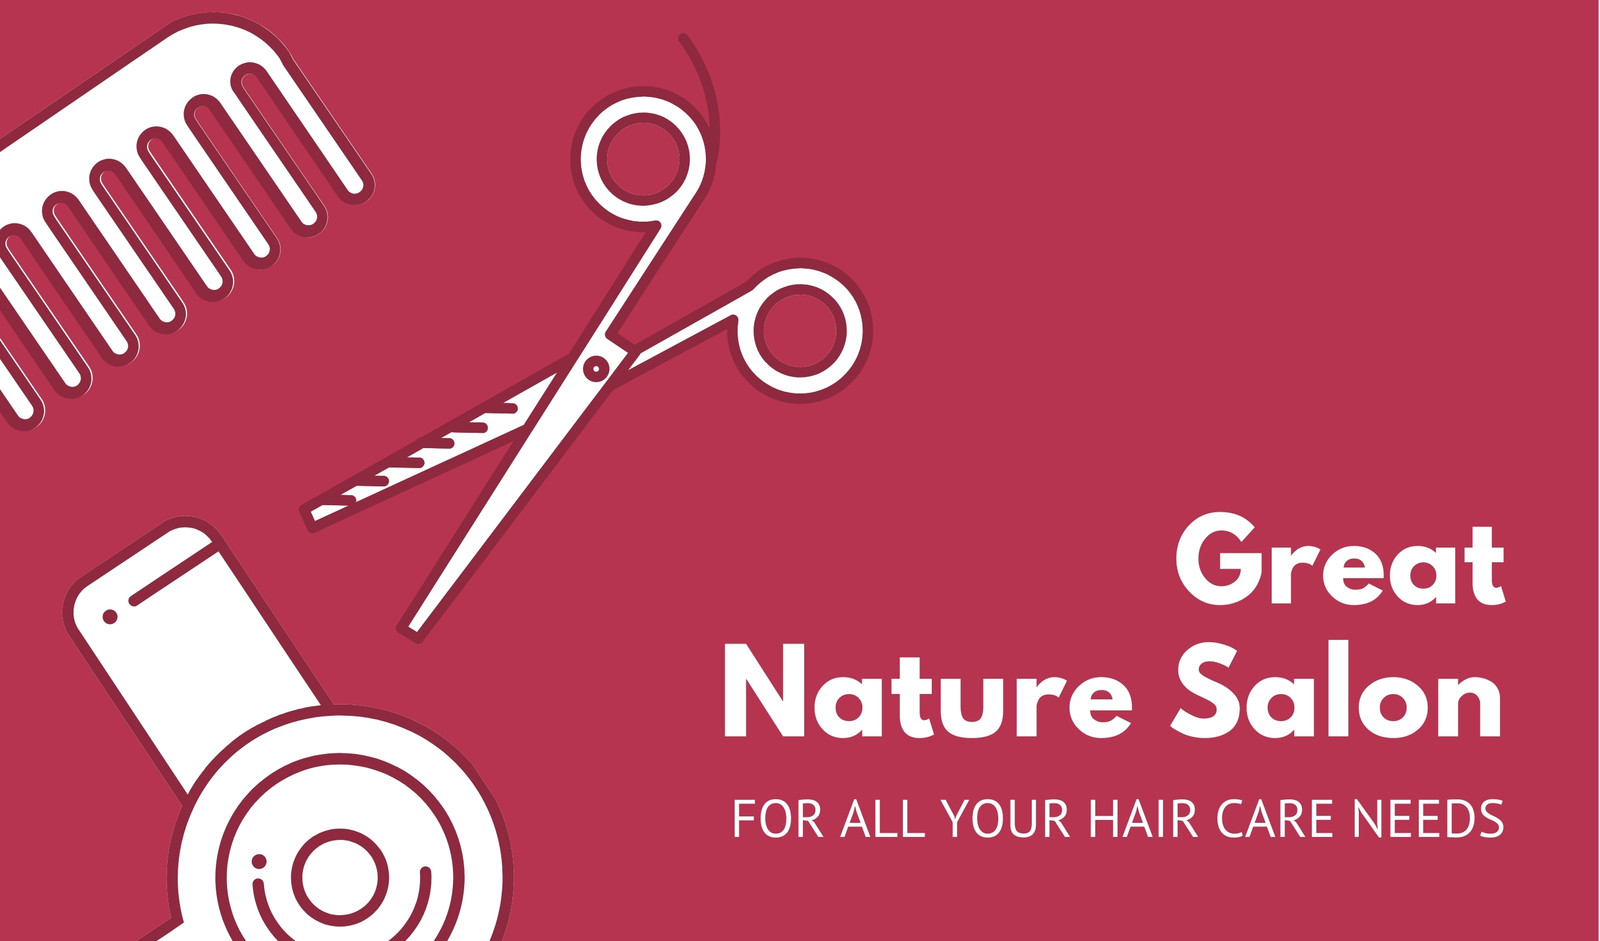 Free custom printable hair salon business card templates | Canva